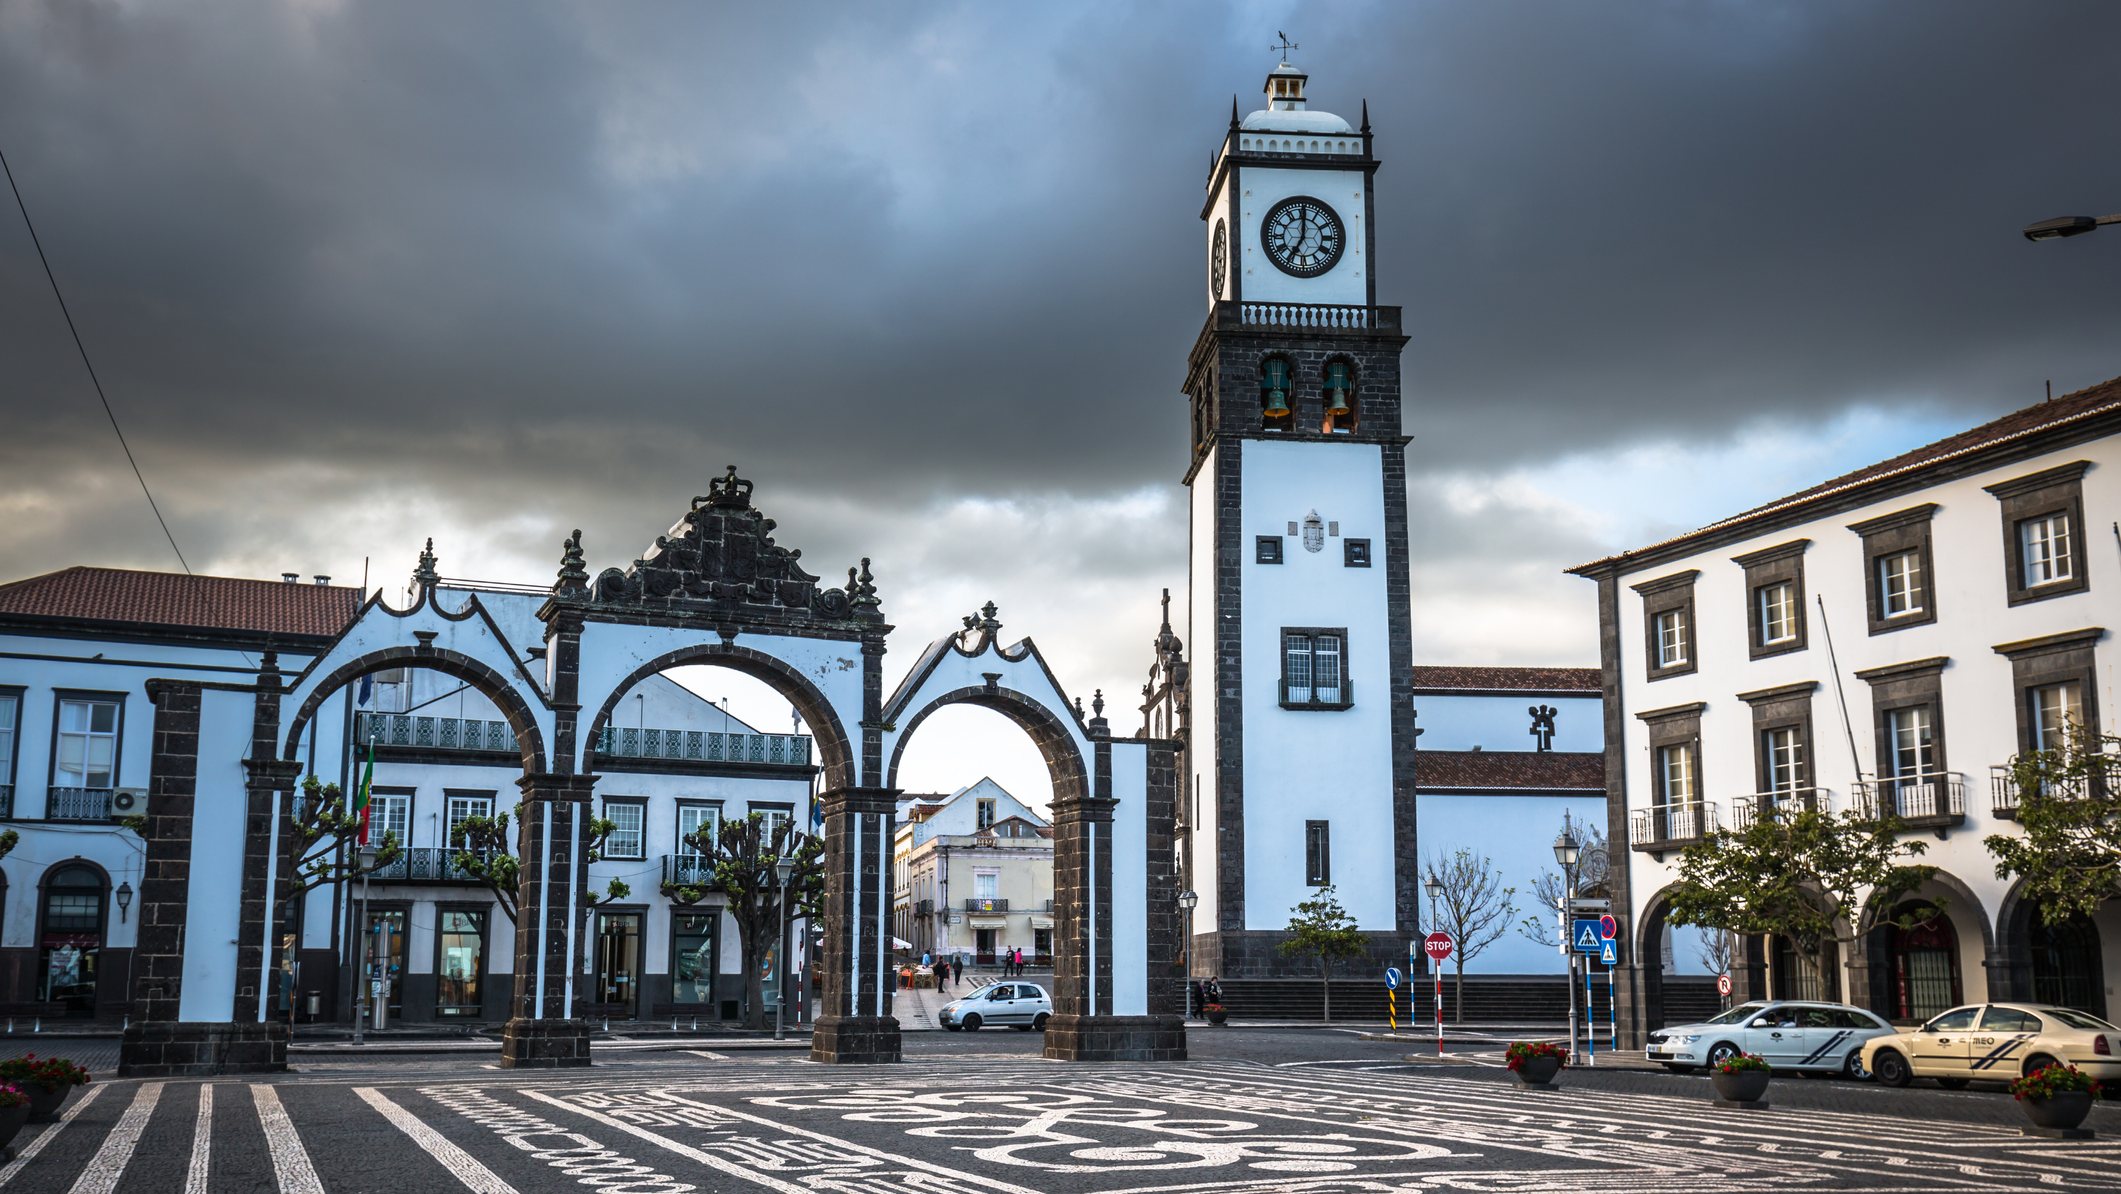 Ponta Delgada, Azores, Portugal - April 20, 2015